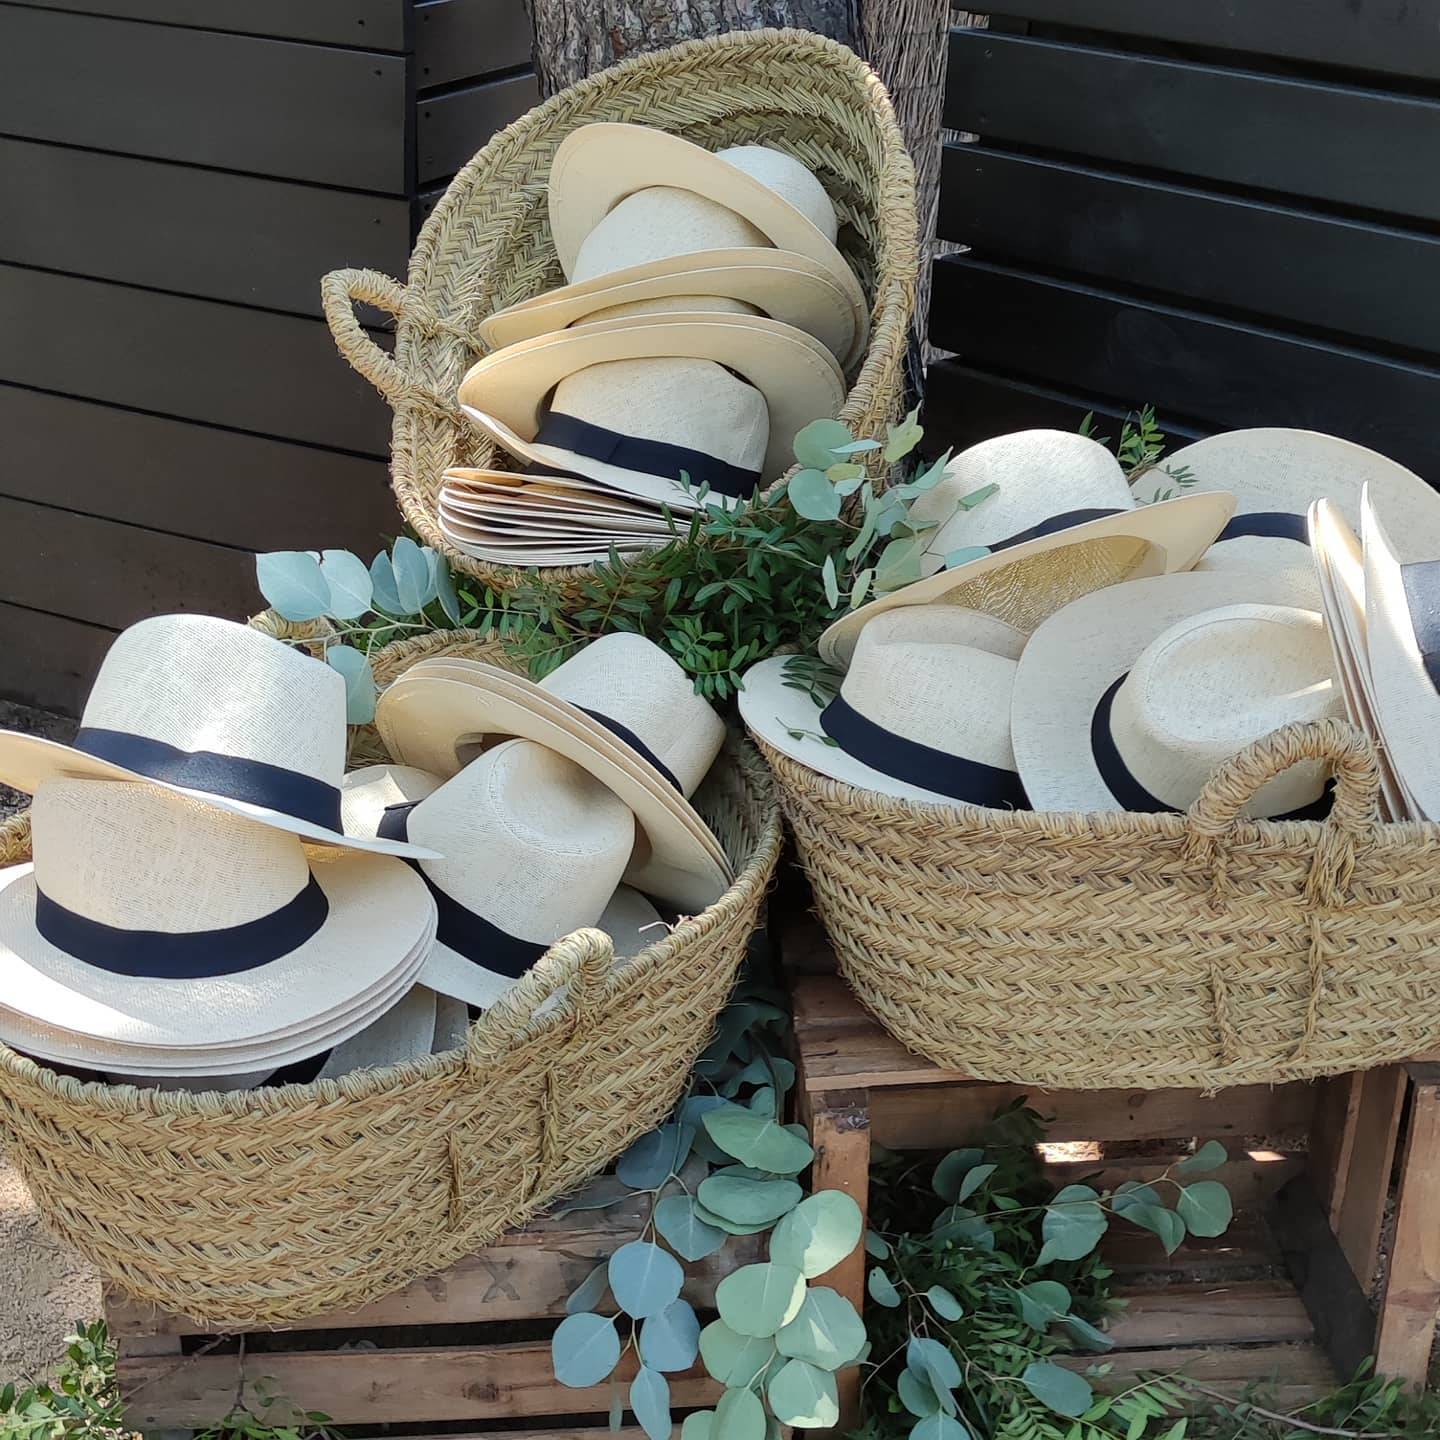 Decoracion de boda con cestas de mimbre para sombreros.